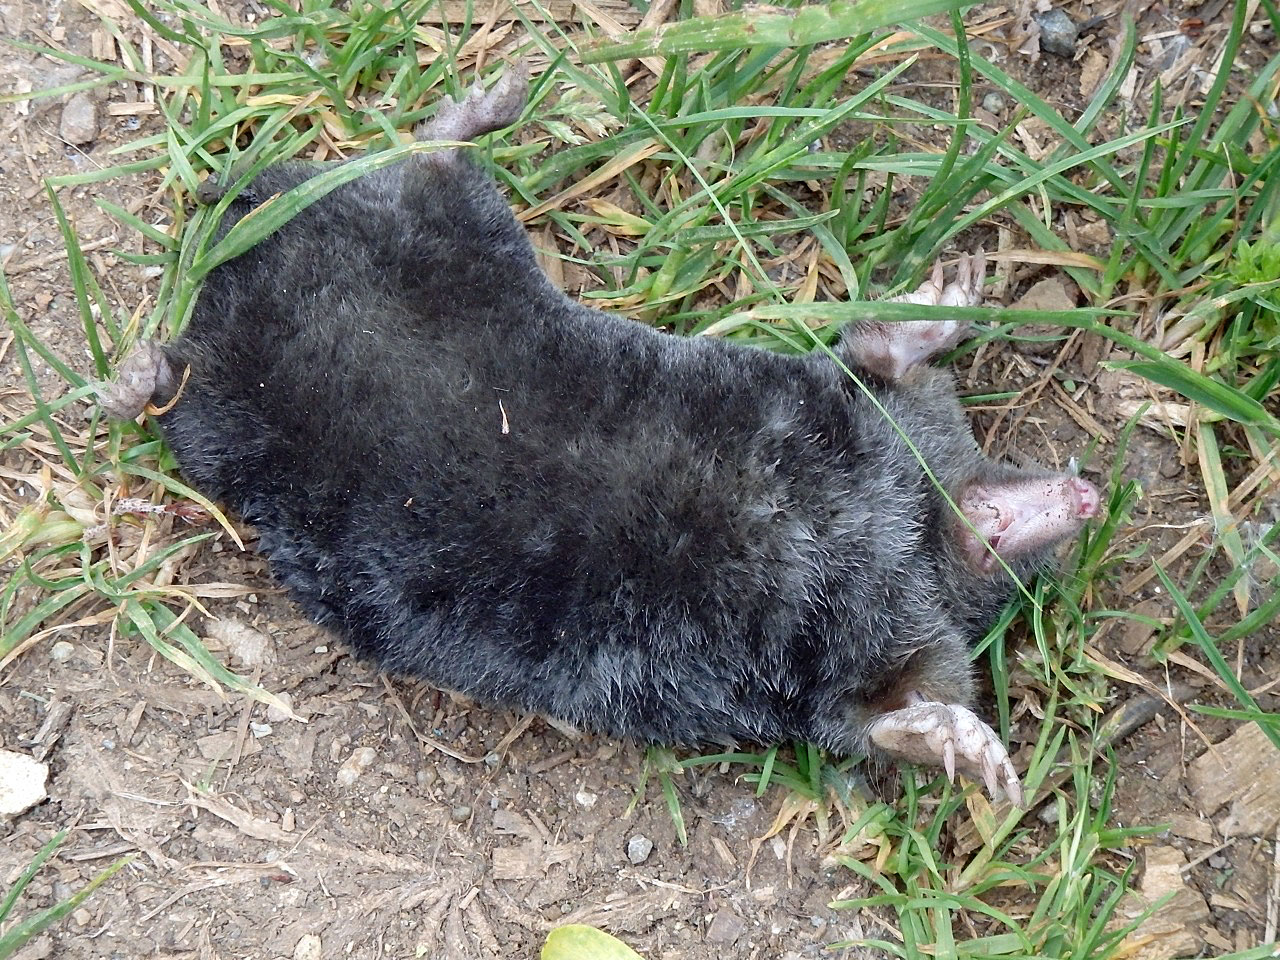 A dead mole